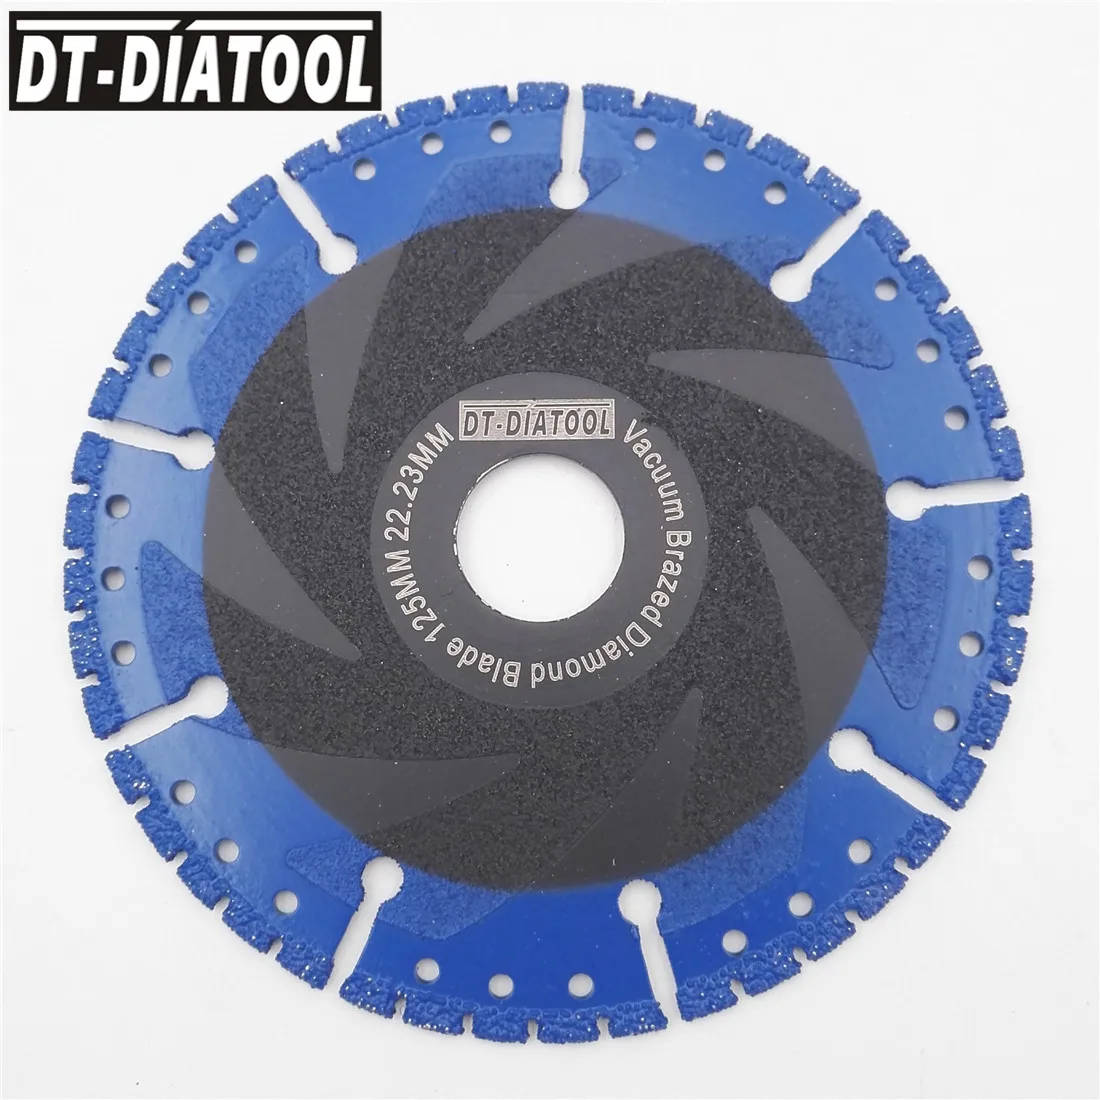 DT-DIATOOL 2 шт. диаметр 125 мм/" вакуумной пайки алмазные режущие диски Все назначения режущие диски режущие алмазные лезвия бетон сталь металл